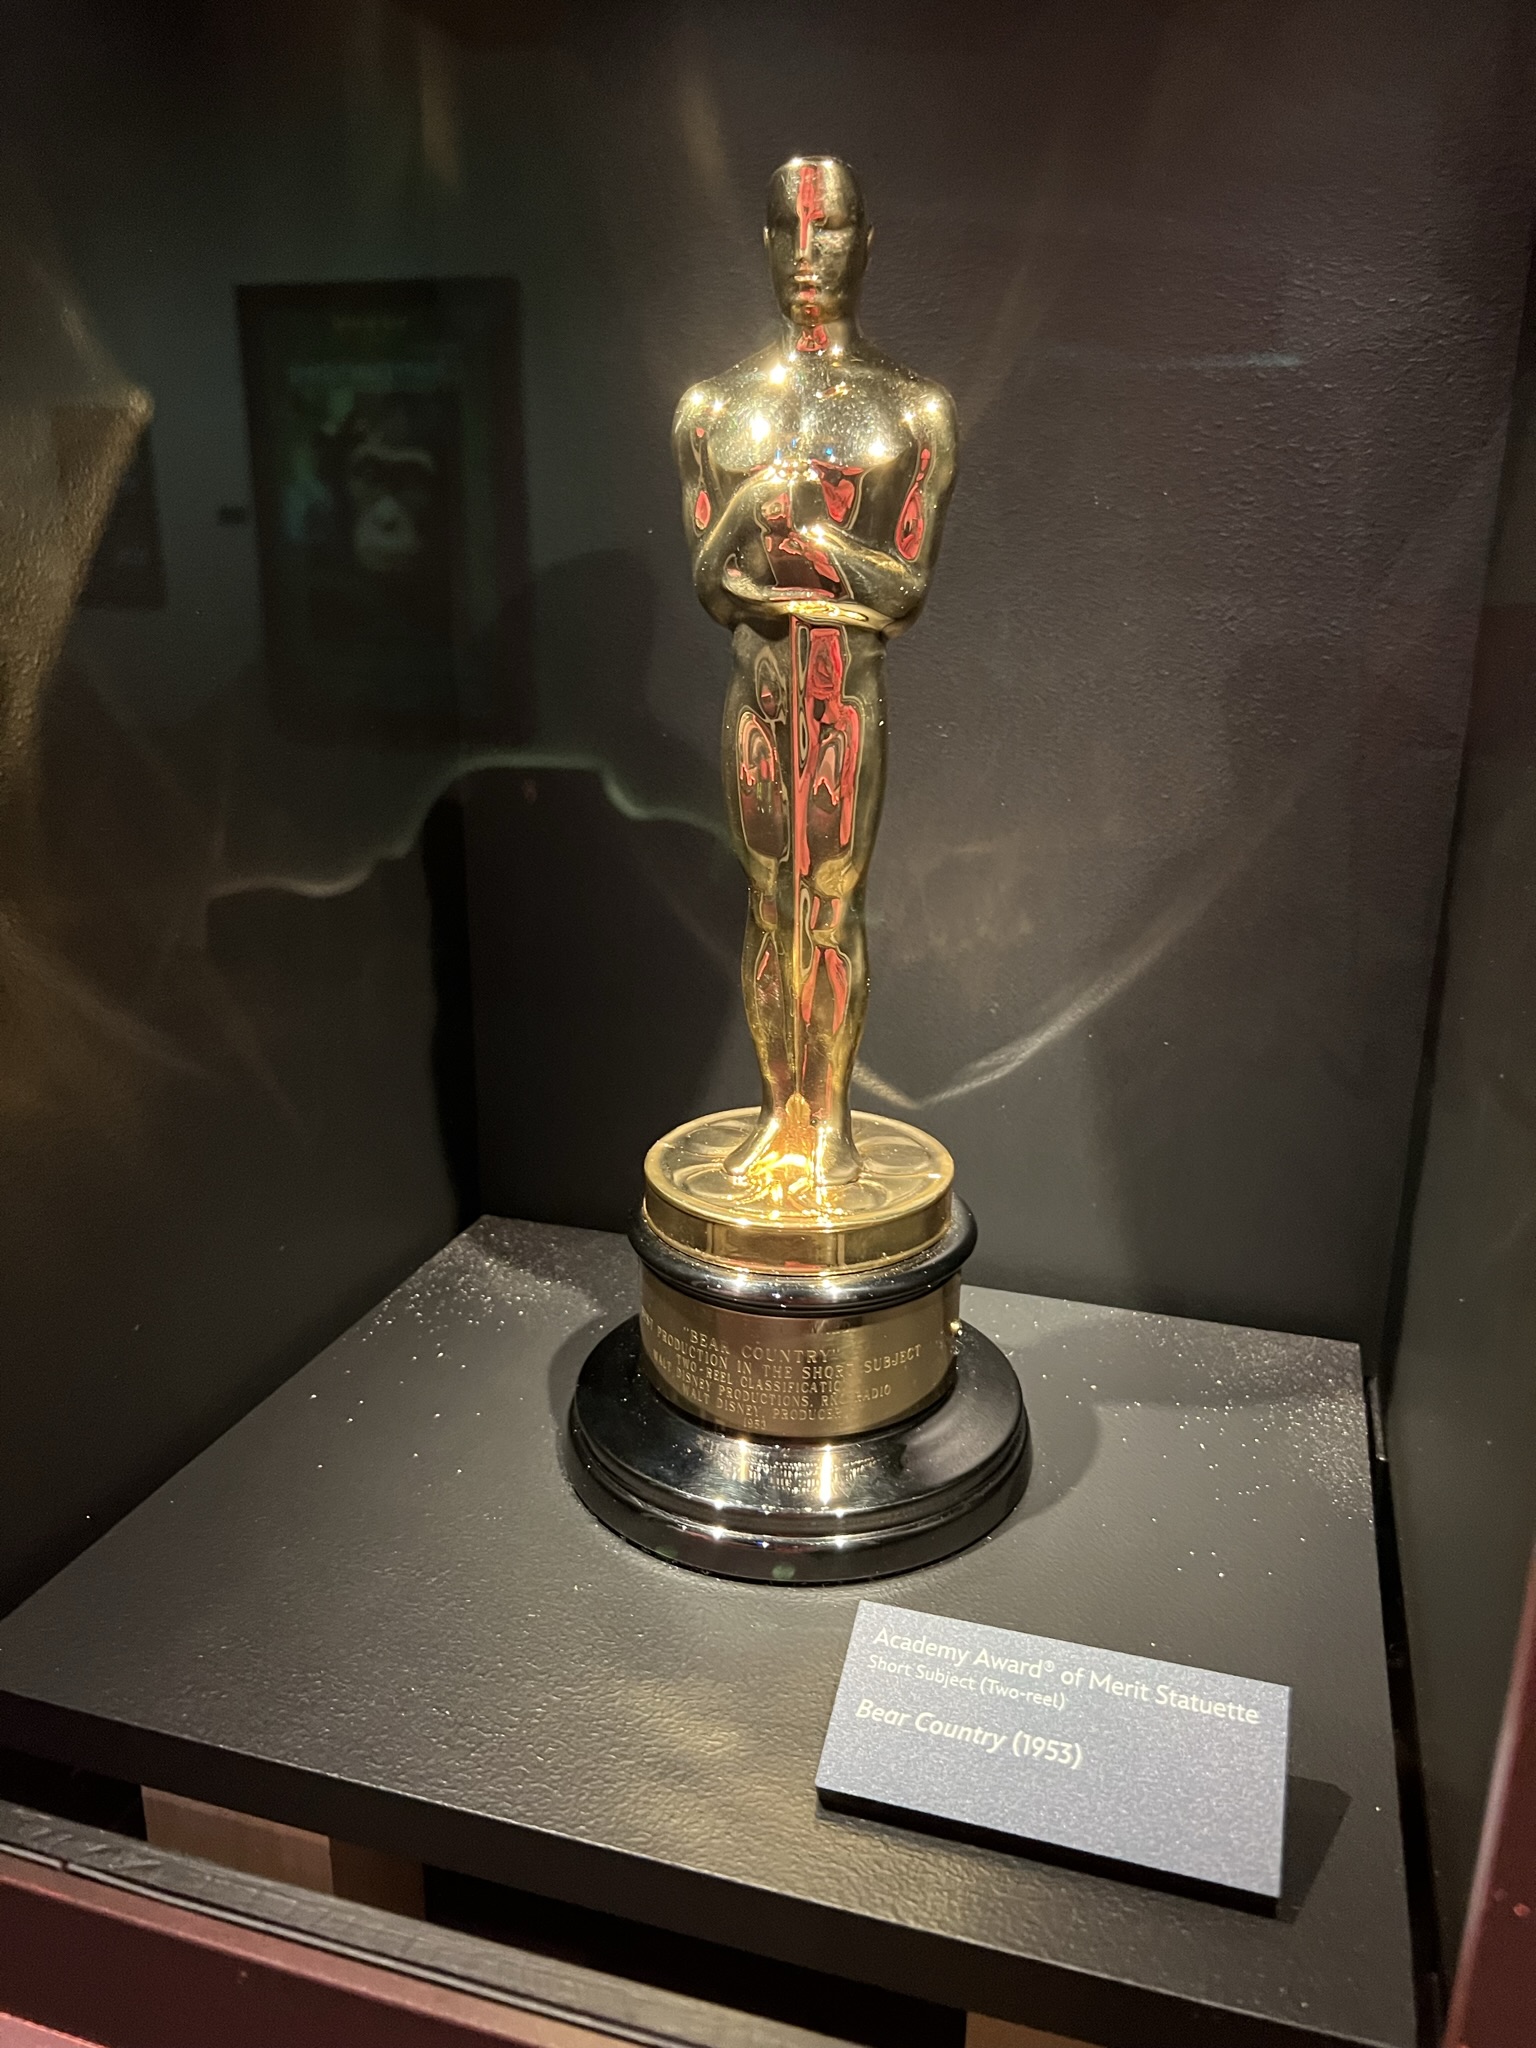 Disney100: The Exhibition Academy Award